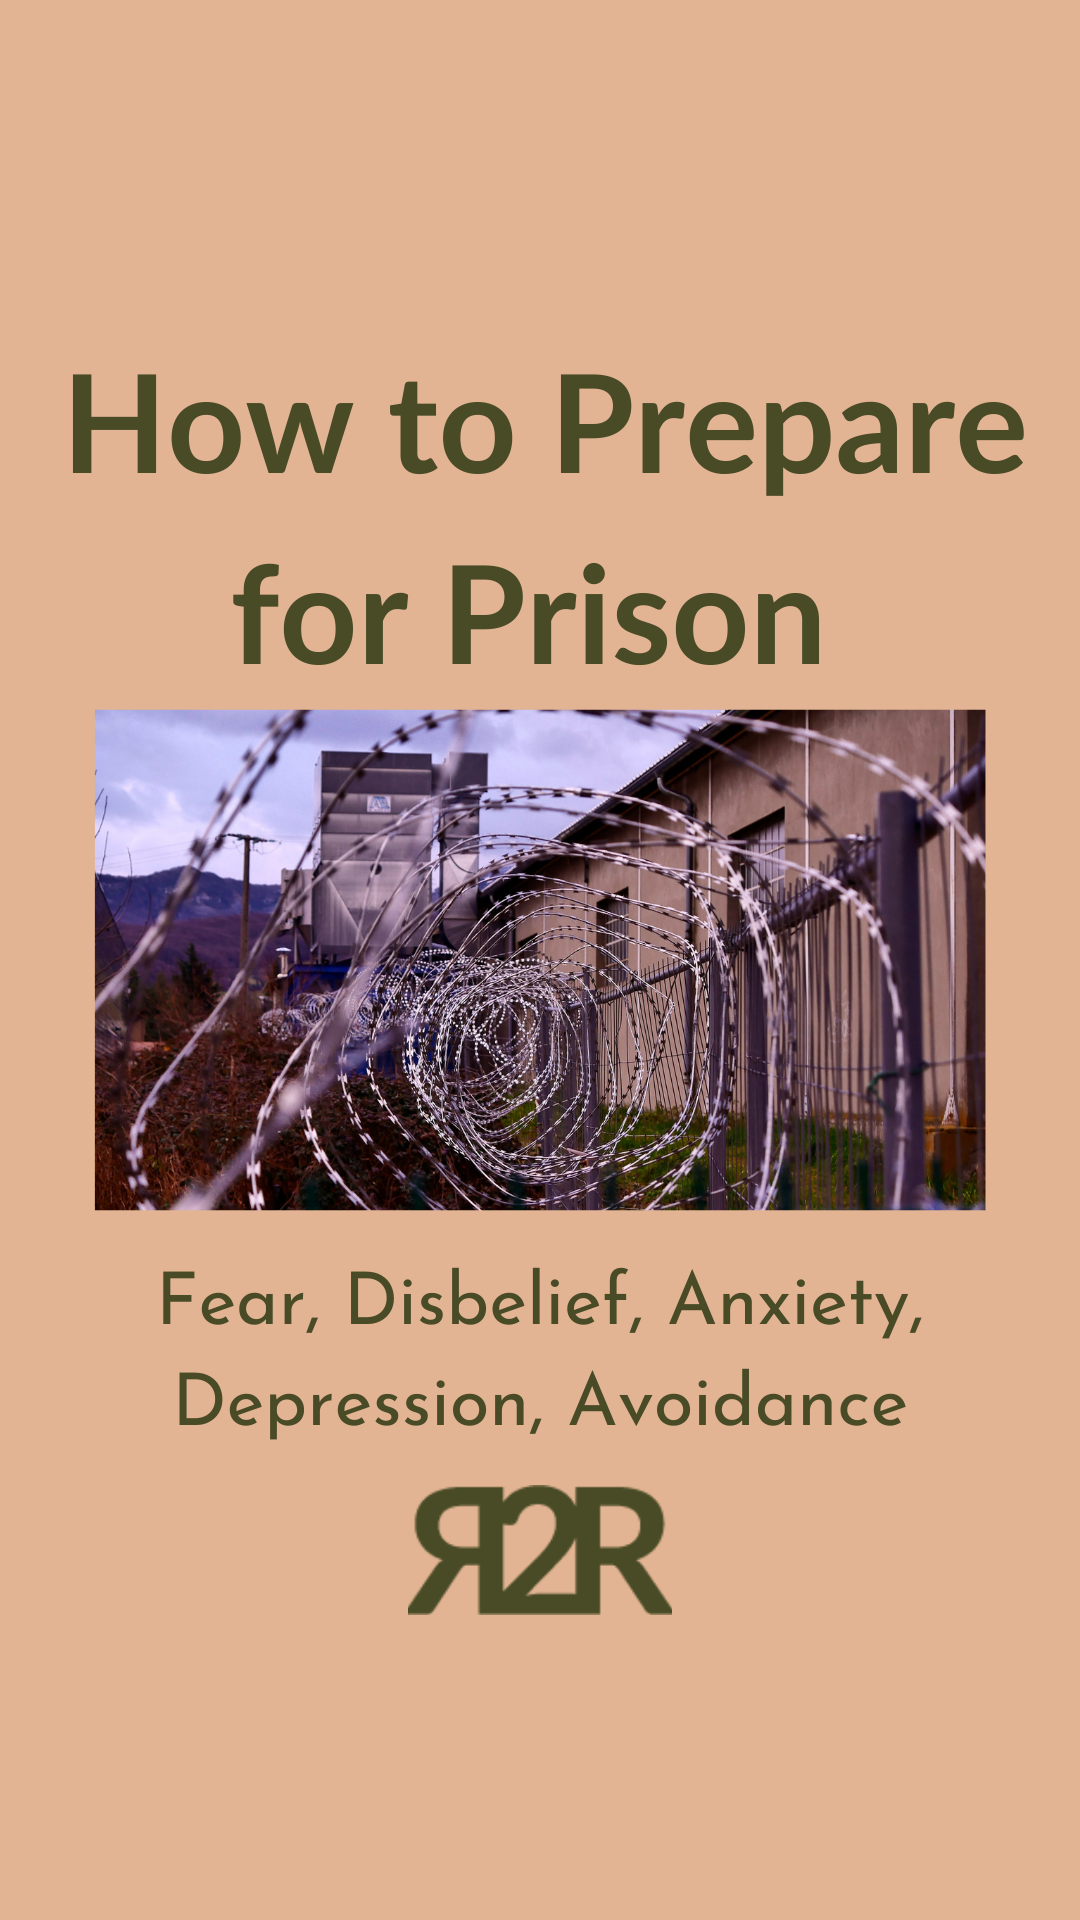 how to prepare for prison graphic